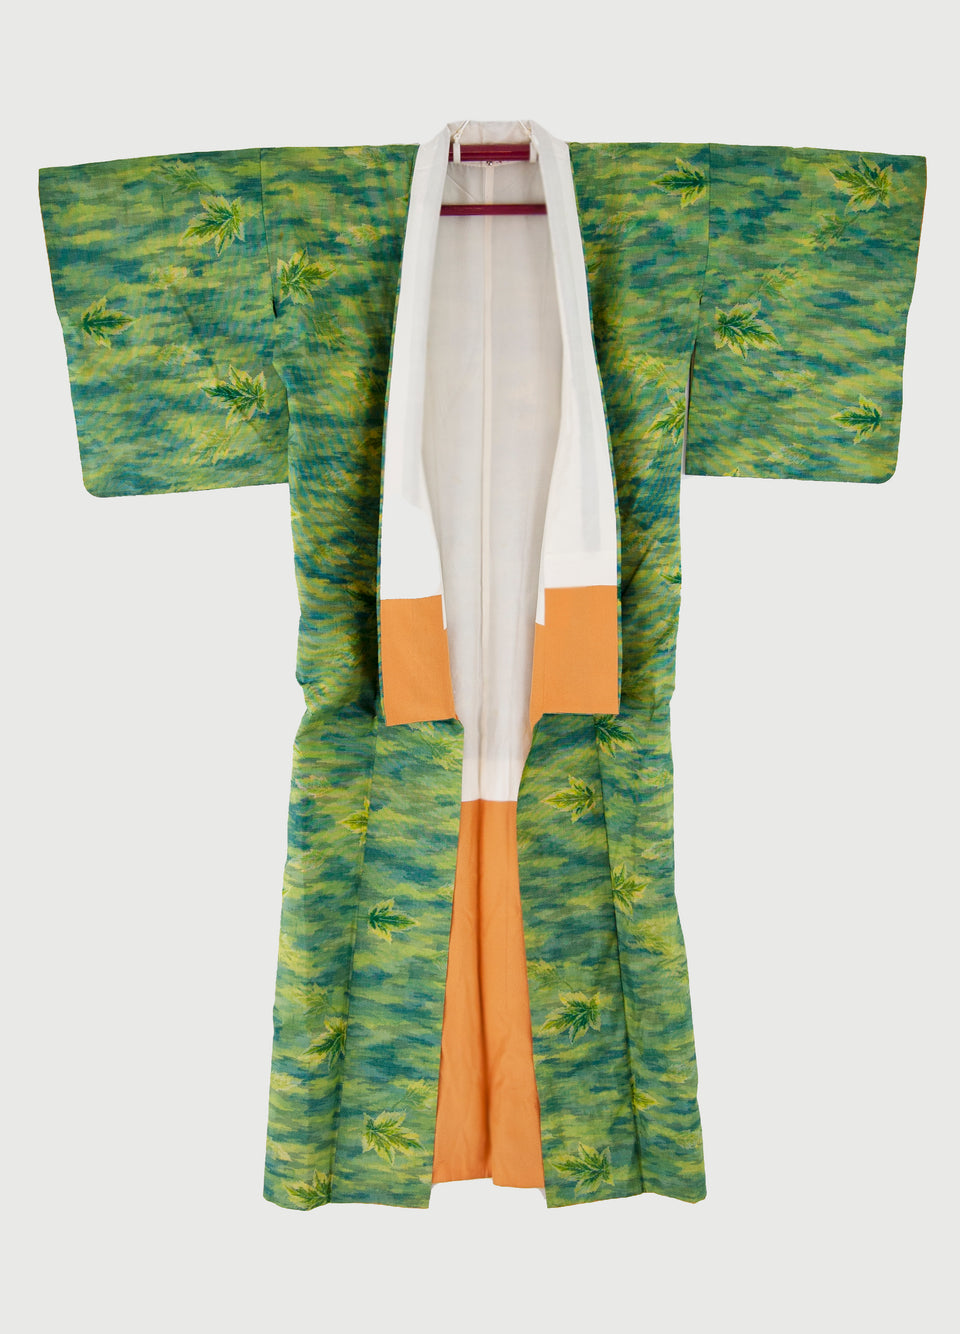 Japanese Yukata (浴衣) Kimono - Green Leaf